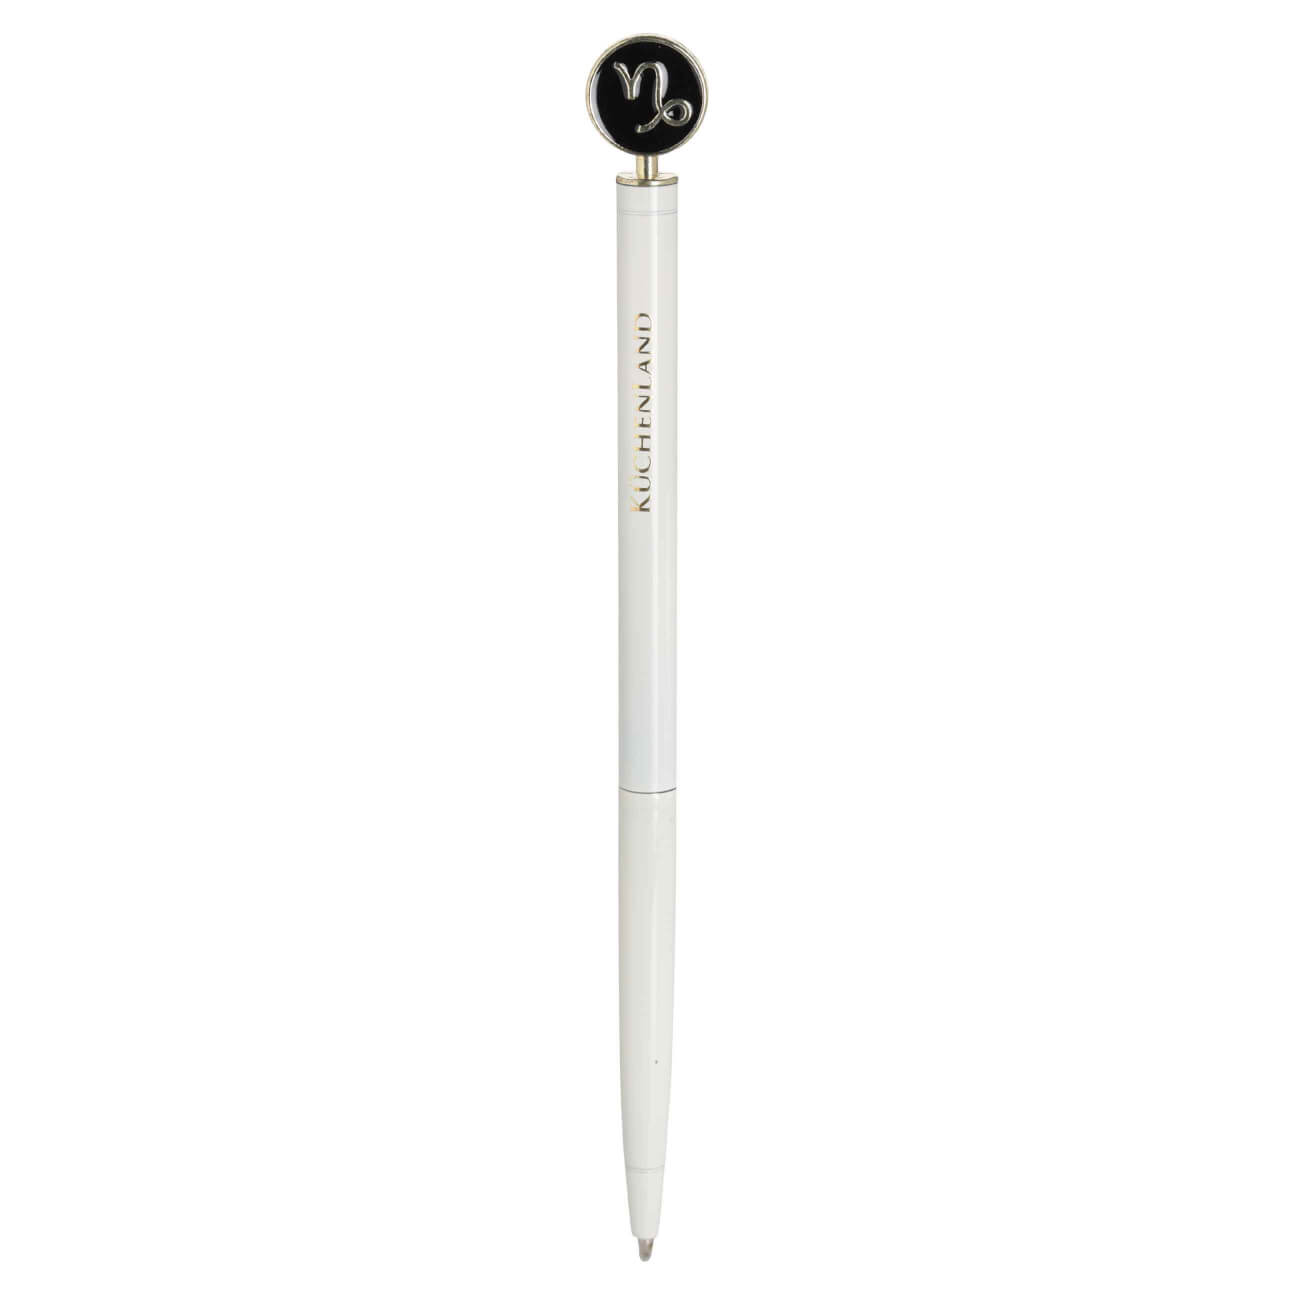 Ручка шариковая, 15 см, с фигуркой, сталь, молочно-золотистая, Козерог, Zodiac масляная шариковая ручка офисмаг